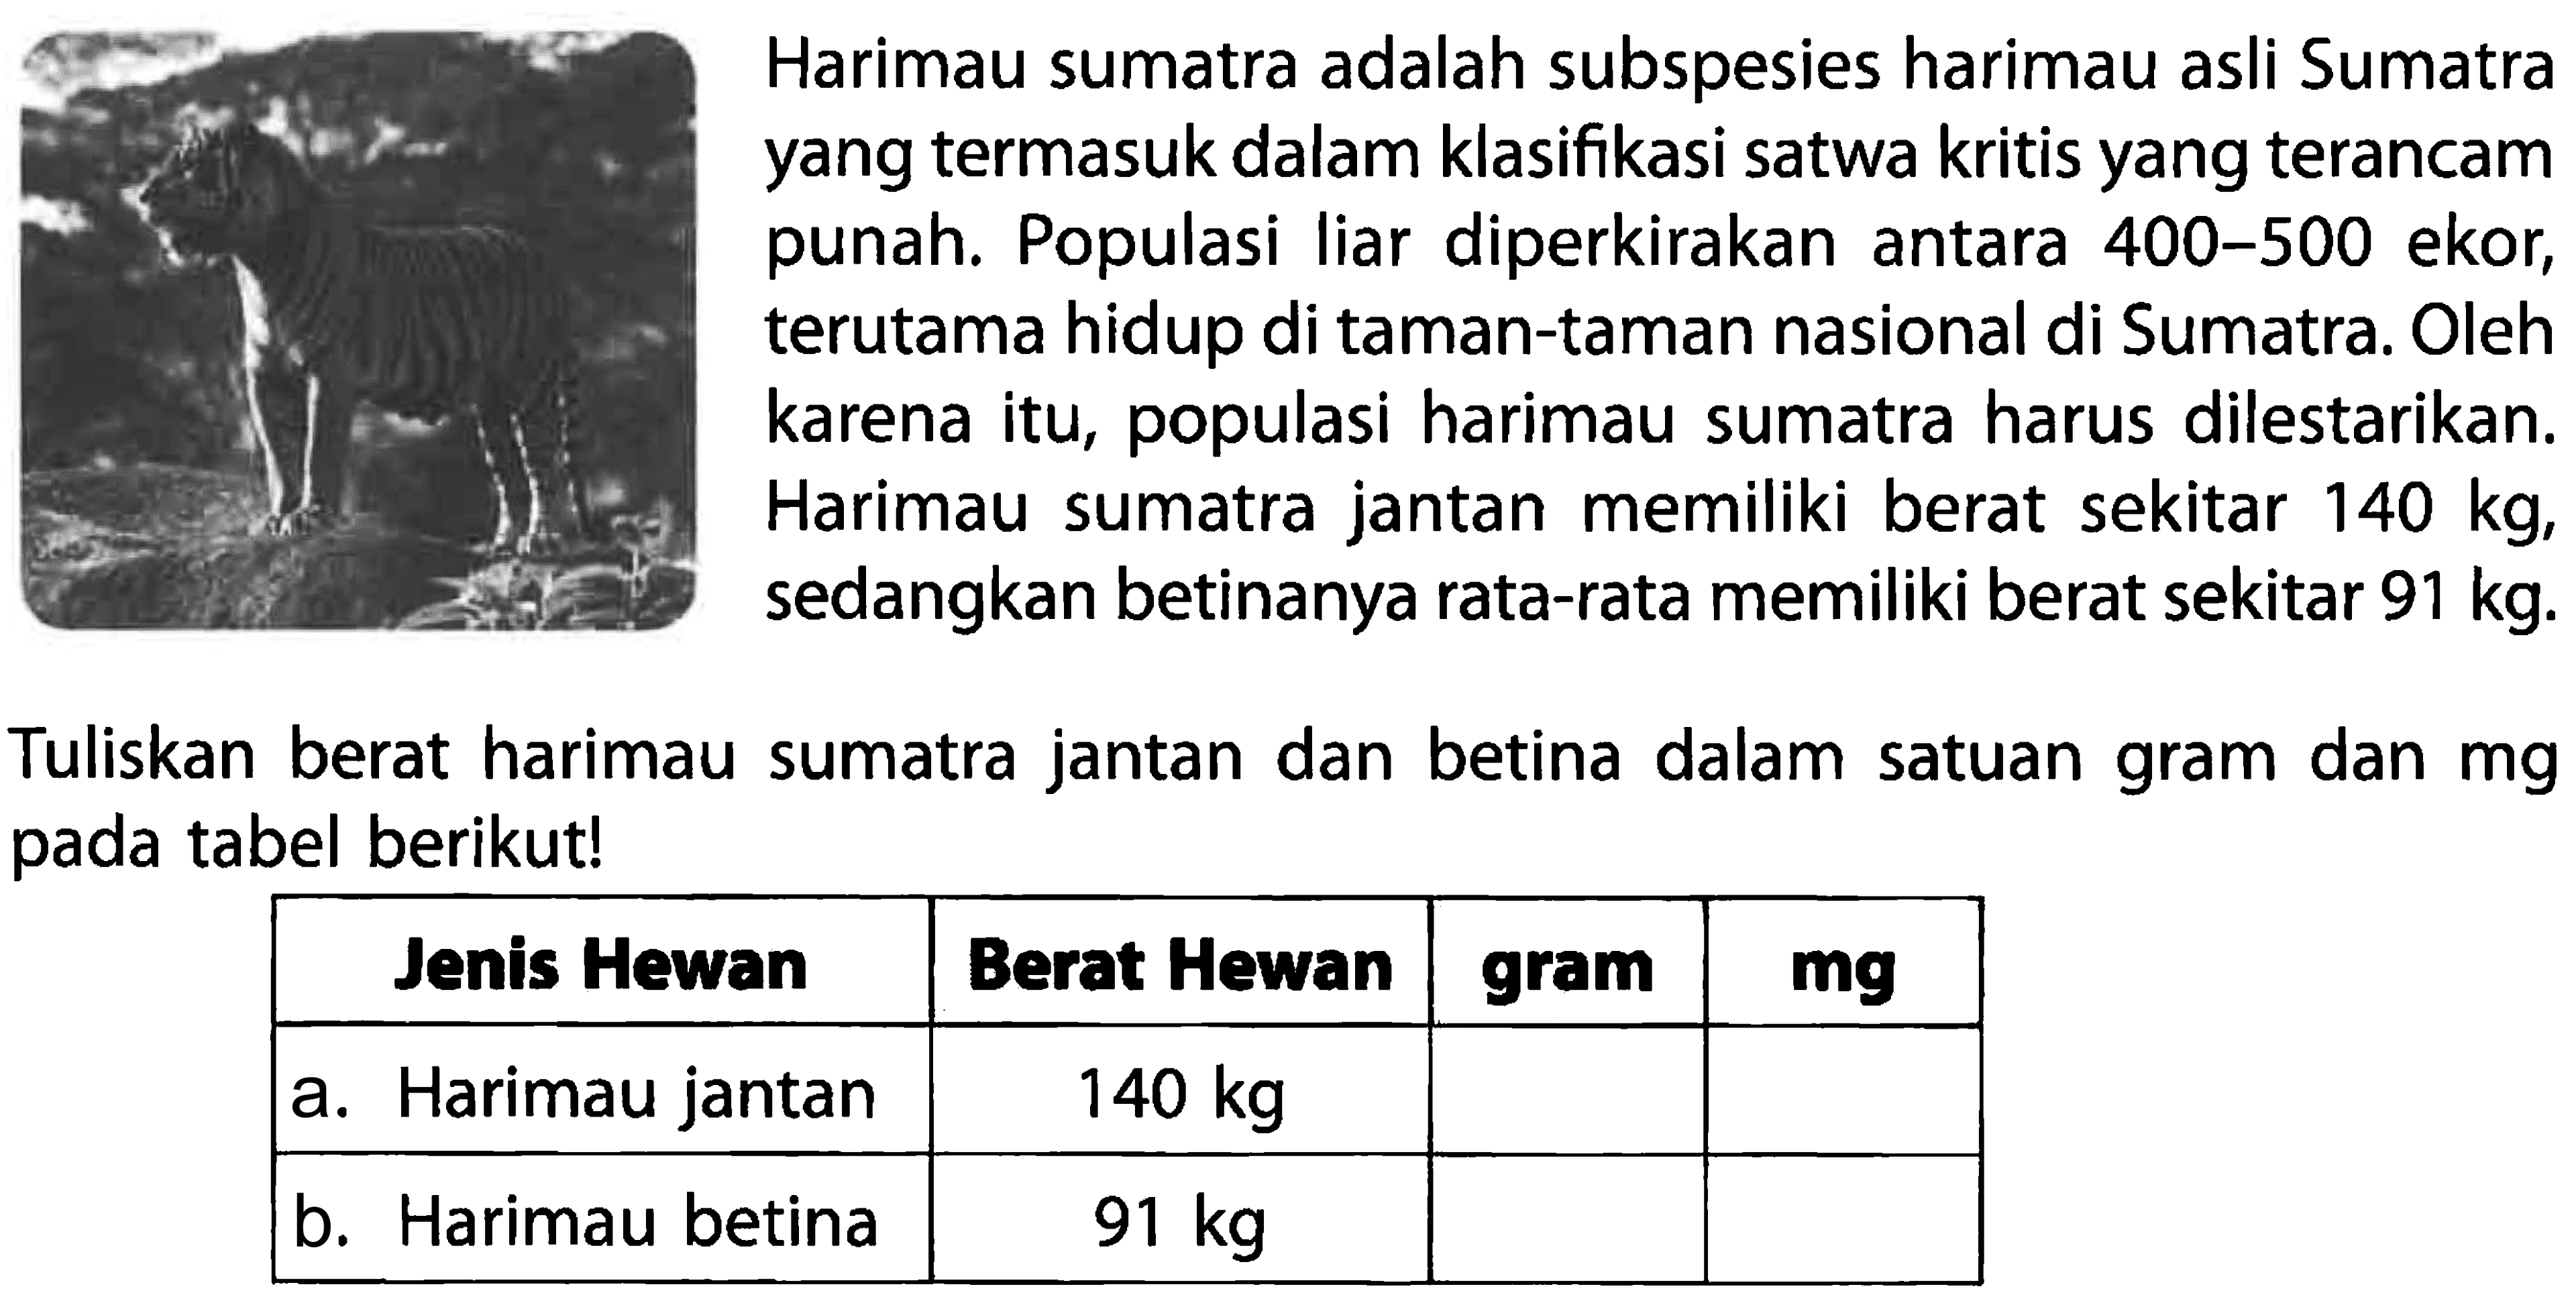 Harimau sumatra adalah subspesies harimau asli Sumatra yang termasuk dalam klasifikasi satwa kritis yang terancam punah. Populasi Iiar diperkirakan antara 400-500 ekor, terutama hidup di taman-taman nasional di Sumatra. Oleh karena itu, populasi harimau sumatra harus dilestarikan. Harimau sumatra jantan memiliki berat sekitar 140 kg, sedangkan betinanya rata-rata memiliki berat sekitar 91 kg. Tuliskan berat harimau sumatra jantan dan betina dalam satuan gram dan mg pada tabel berikut! Jenis Hewan Berat Hewan gram mg Harimau jantan 140 kg Harimau betina 91 kg